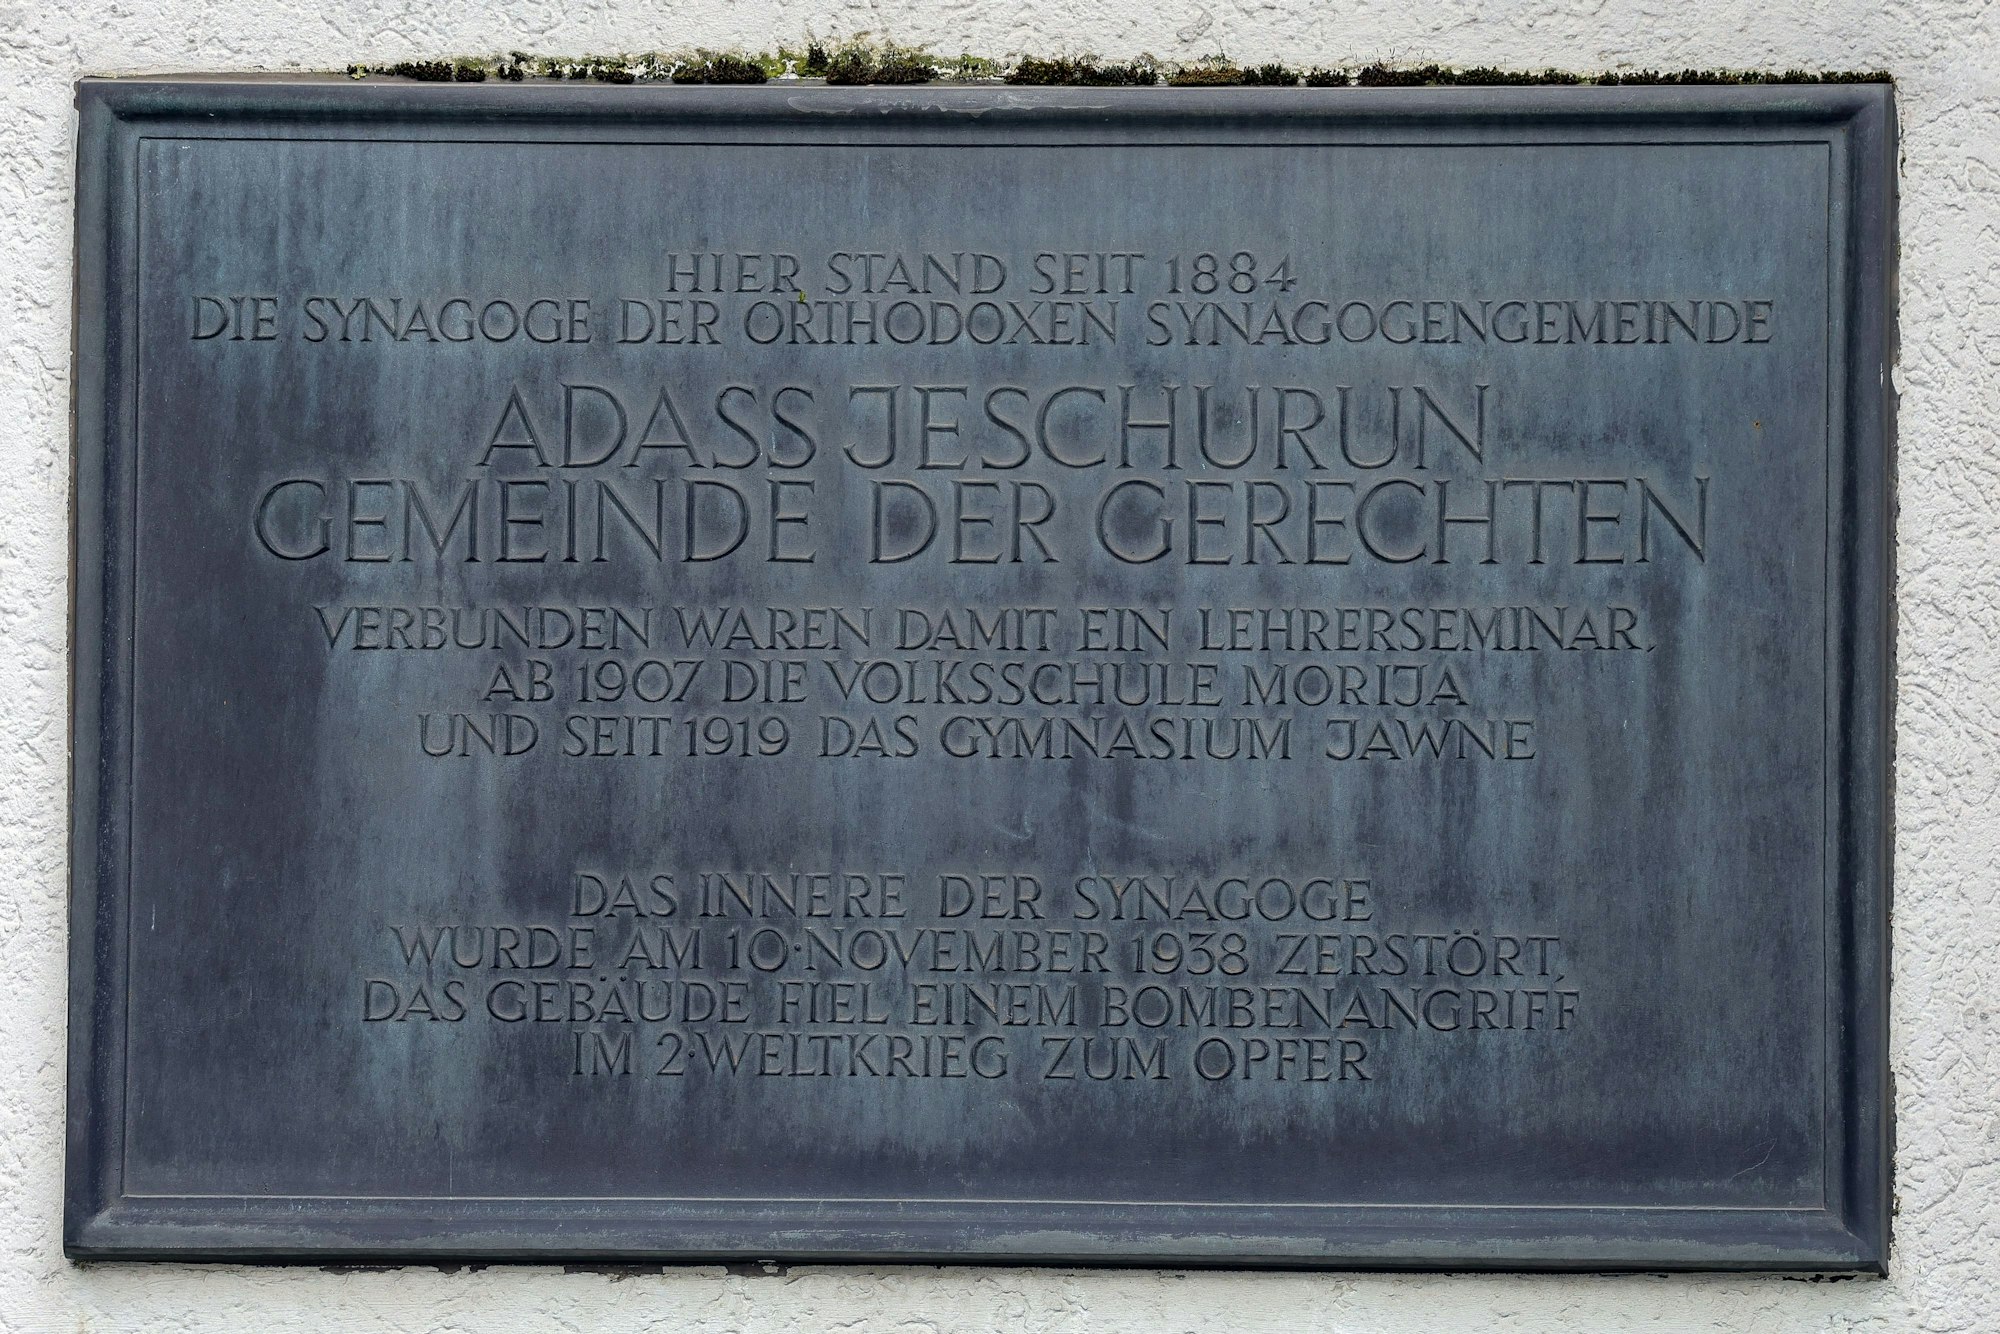 Eine metallene Tafel ist in eine Wand eingelassen. Auf ihr steht neben kleinerer Schrift der Text „Adass Jeschurun \ Gemeinde der Gerechten“.